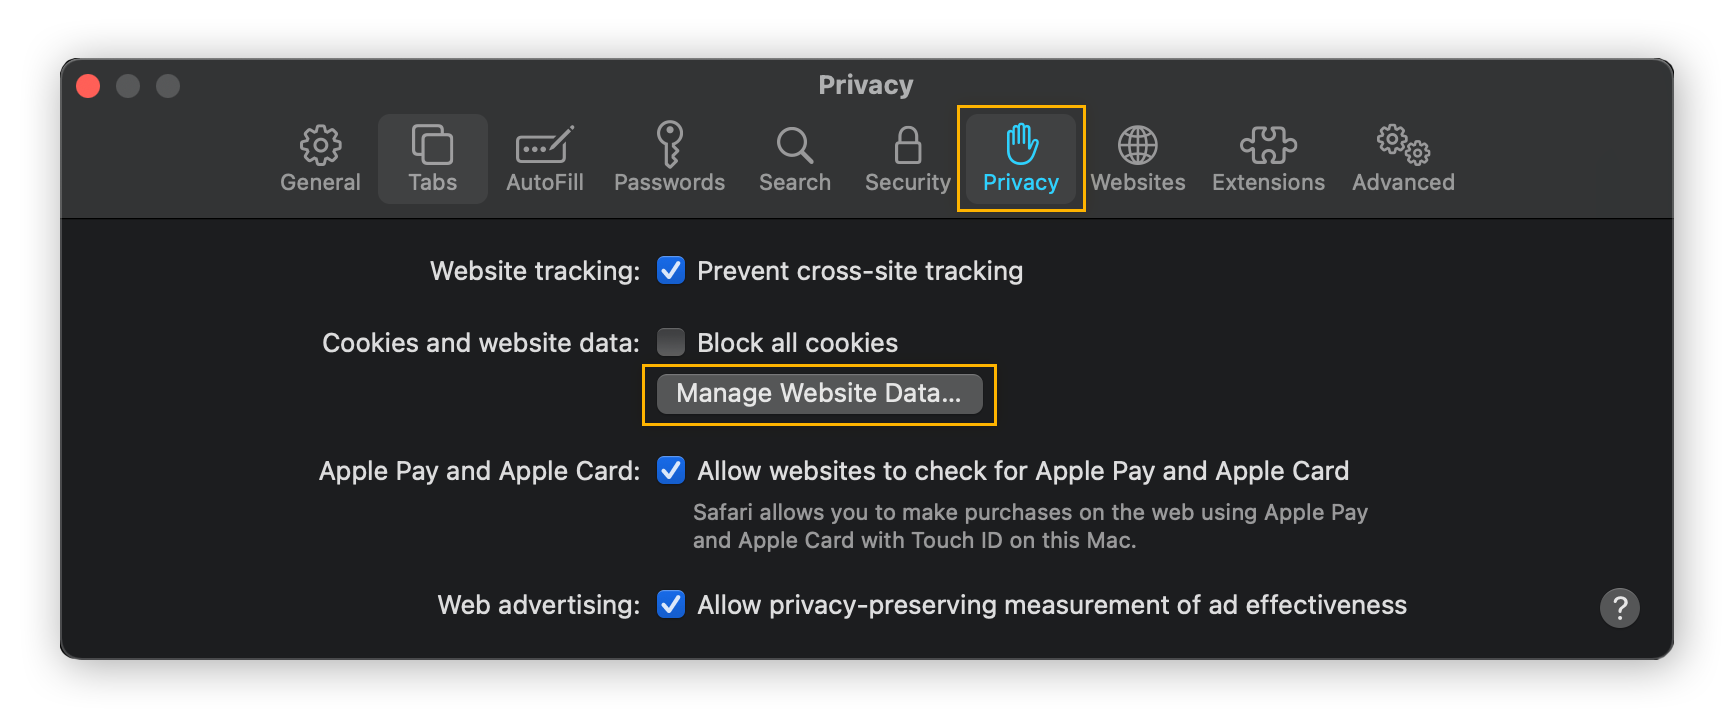 Impostazioni per la privacy in Safari per macOS